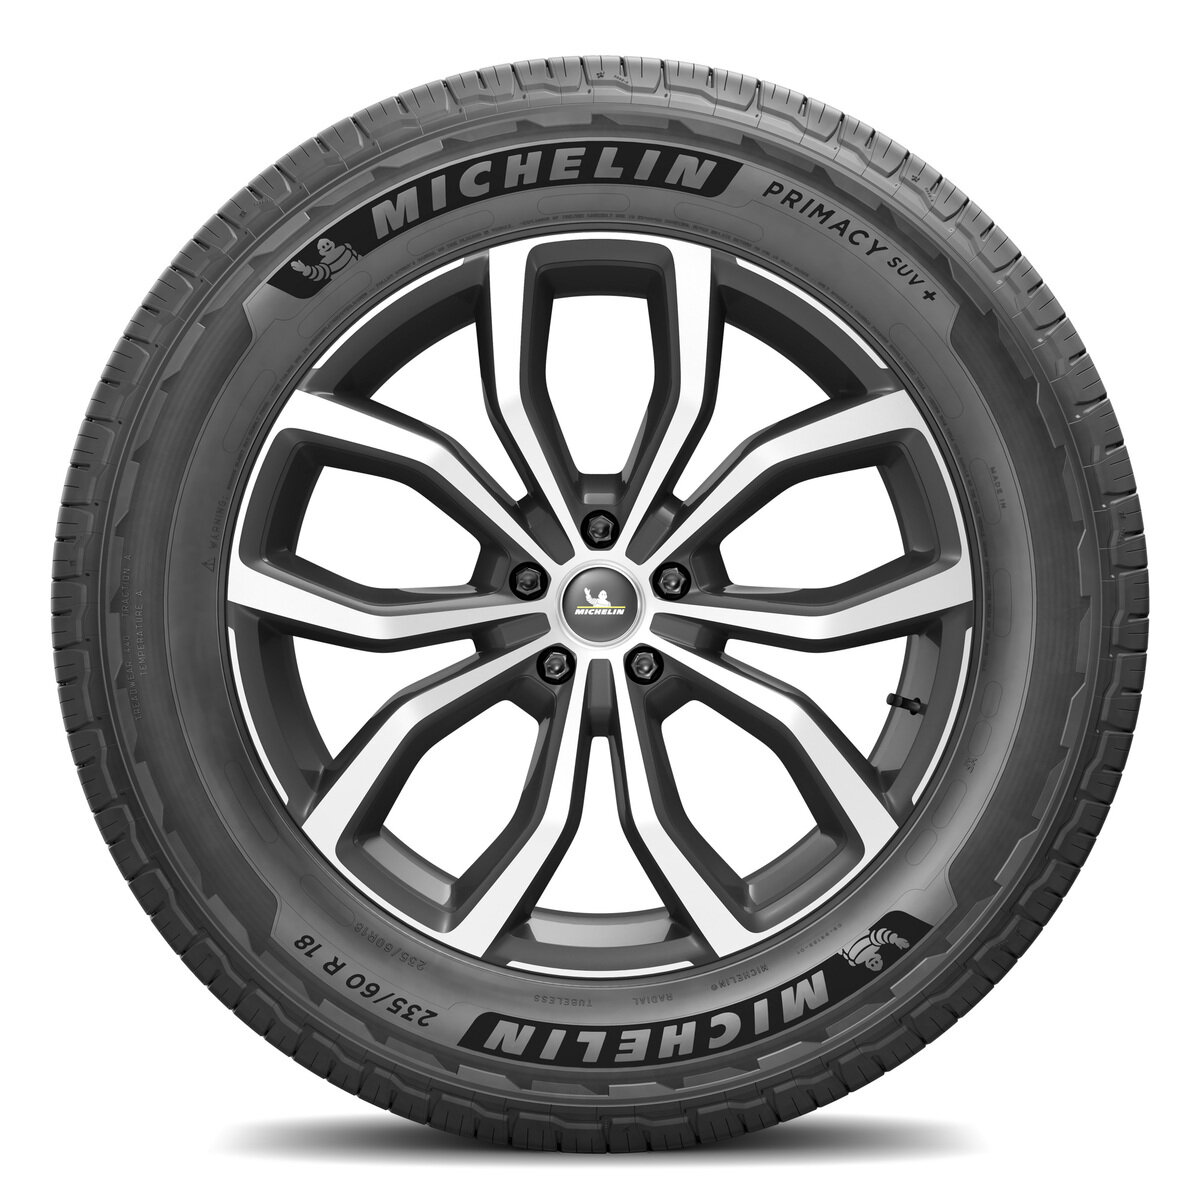 Michelin 225/65 R17 106H XL TL PRIMACY SUV+MI | Costco Japan